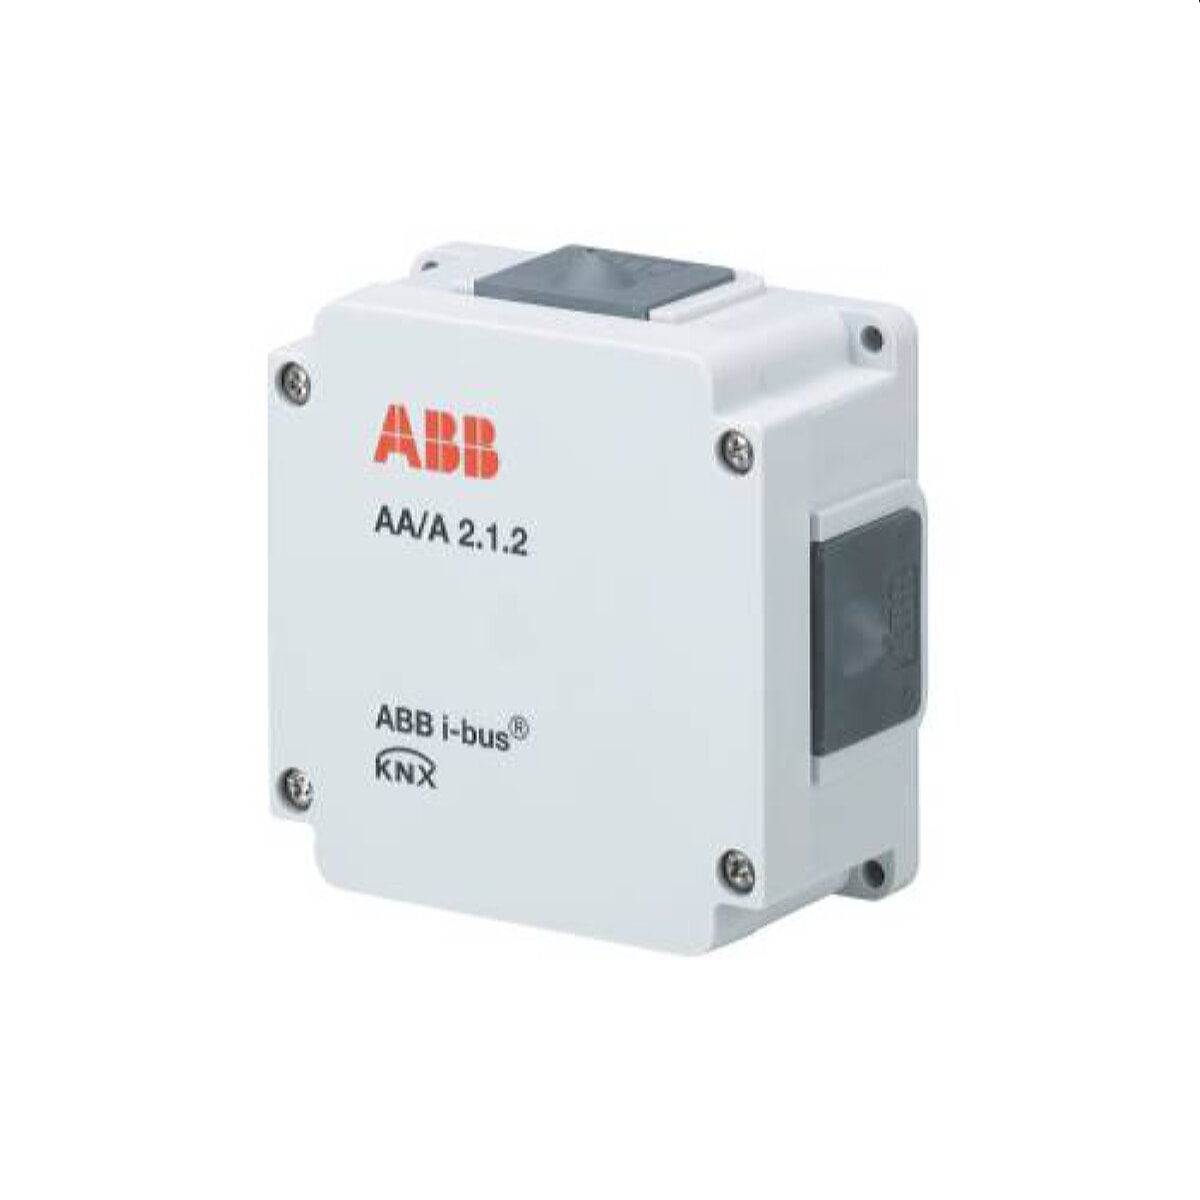 ABB Stotz contact analogue actuator AA/A2.1.2 2-fold AP 2CDG110203R0011